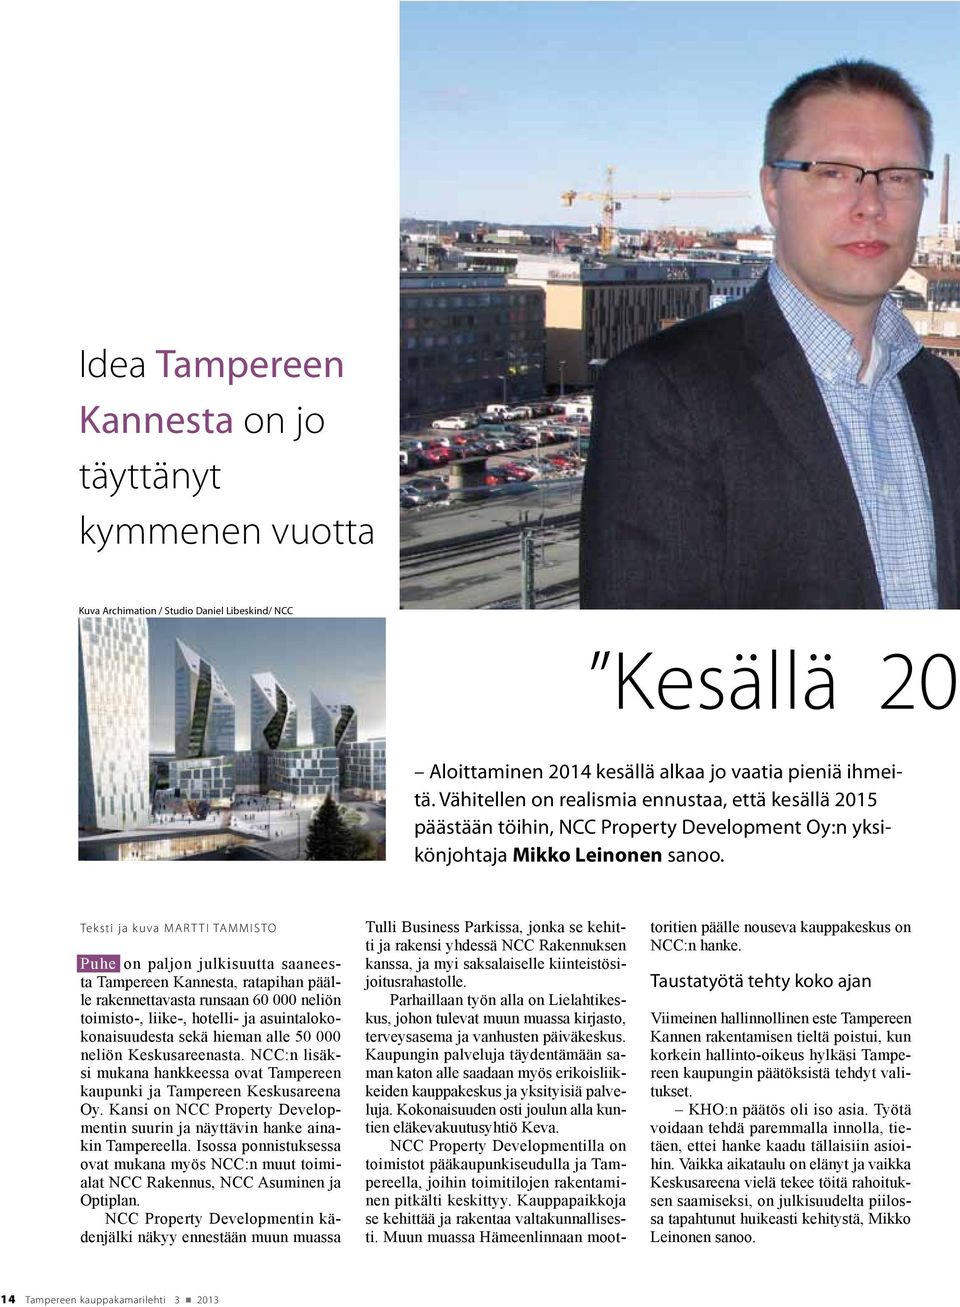 Teksti ja kuva Martti Tammisto Puhe on paljon julkisuutta saaneesta Tampereen Kannesta, ratapihan päälle rakennettavasta runsaan 60 000 neliön toimisto-, liike-, hotelli- ja asuintalokokonaisuudesta